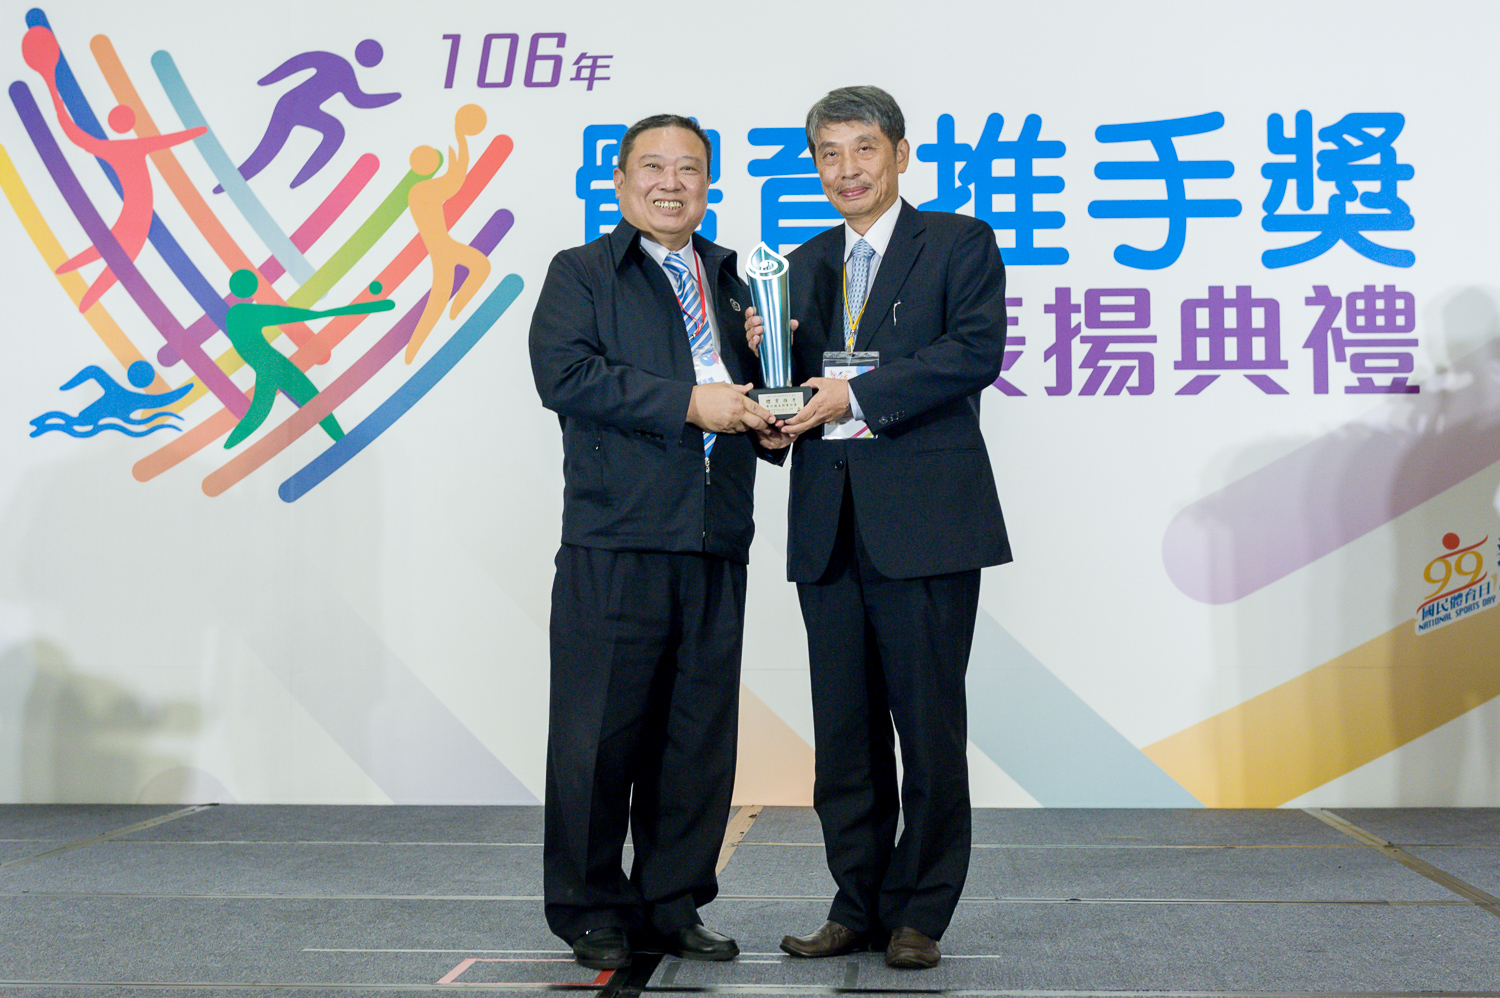 台灣日立亞太股份有限公司獲得106年體育推手獎長期贊助獎肯定，由陳世鴻總經理代表受獎